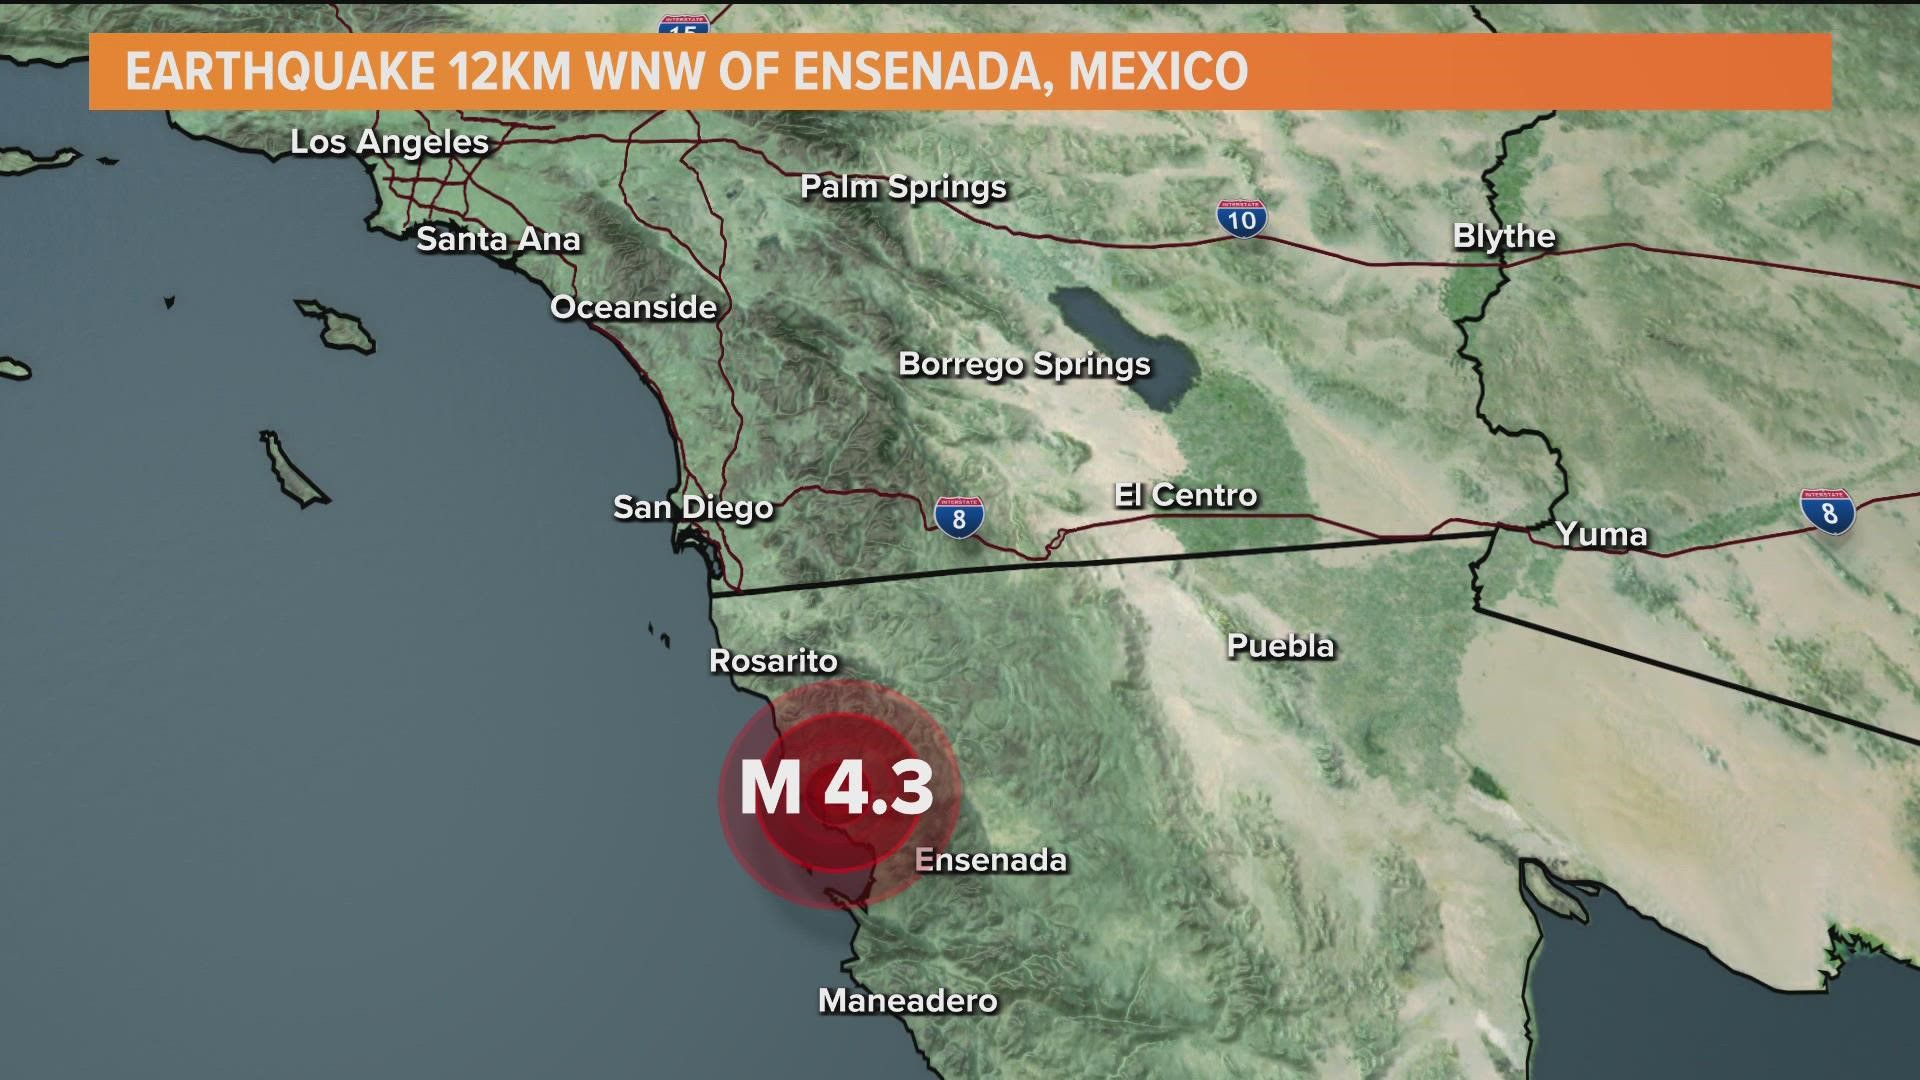 USGS reports a 4.3 magnitude earthquake near Ensenada, Mexico on Monday morning.